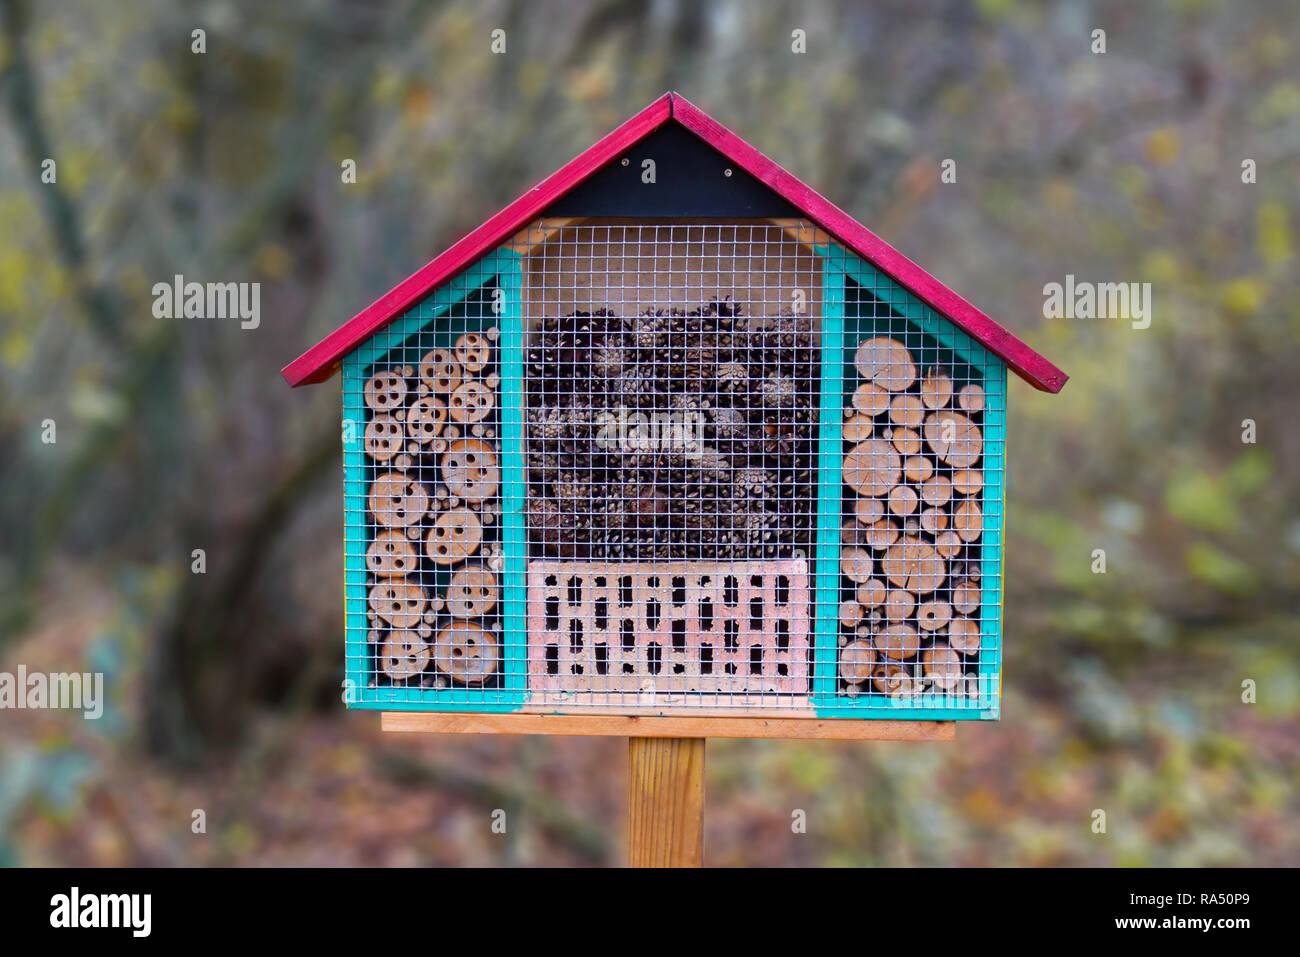 Près d'un bois coloré insect house hôtel structure créée pour fournir un abri pour les insectes comme les abeilles pour empêcher l'extinction Banque D'Images